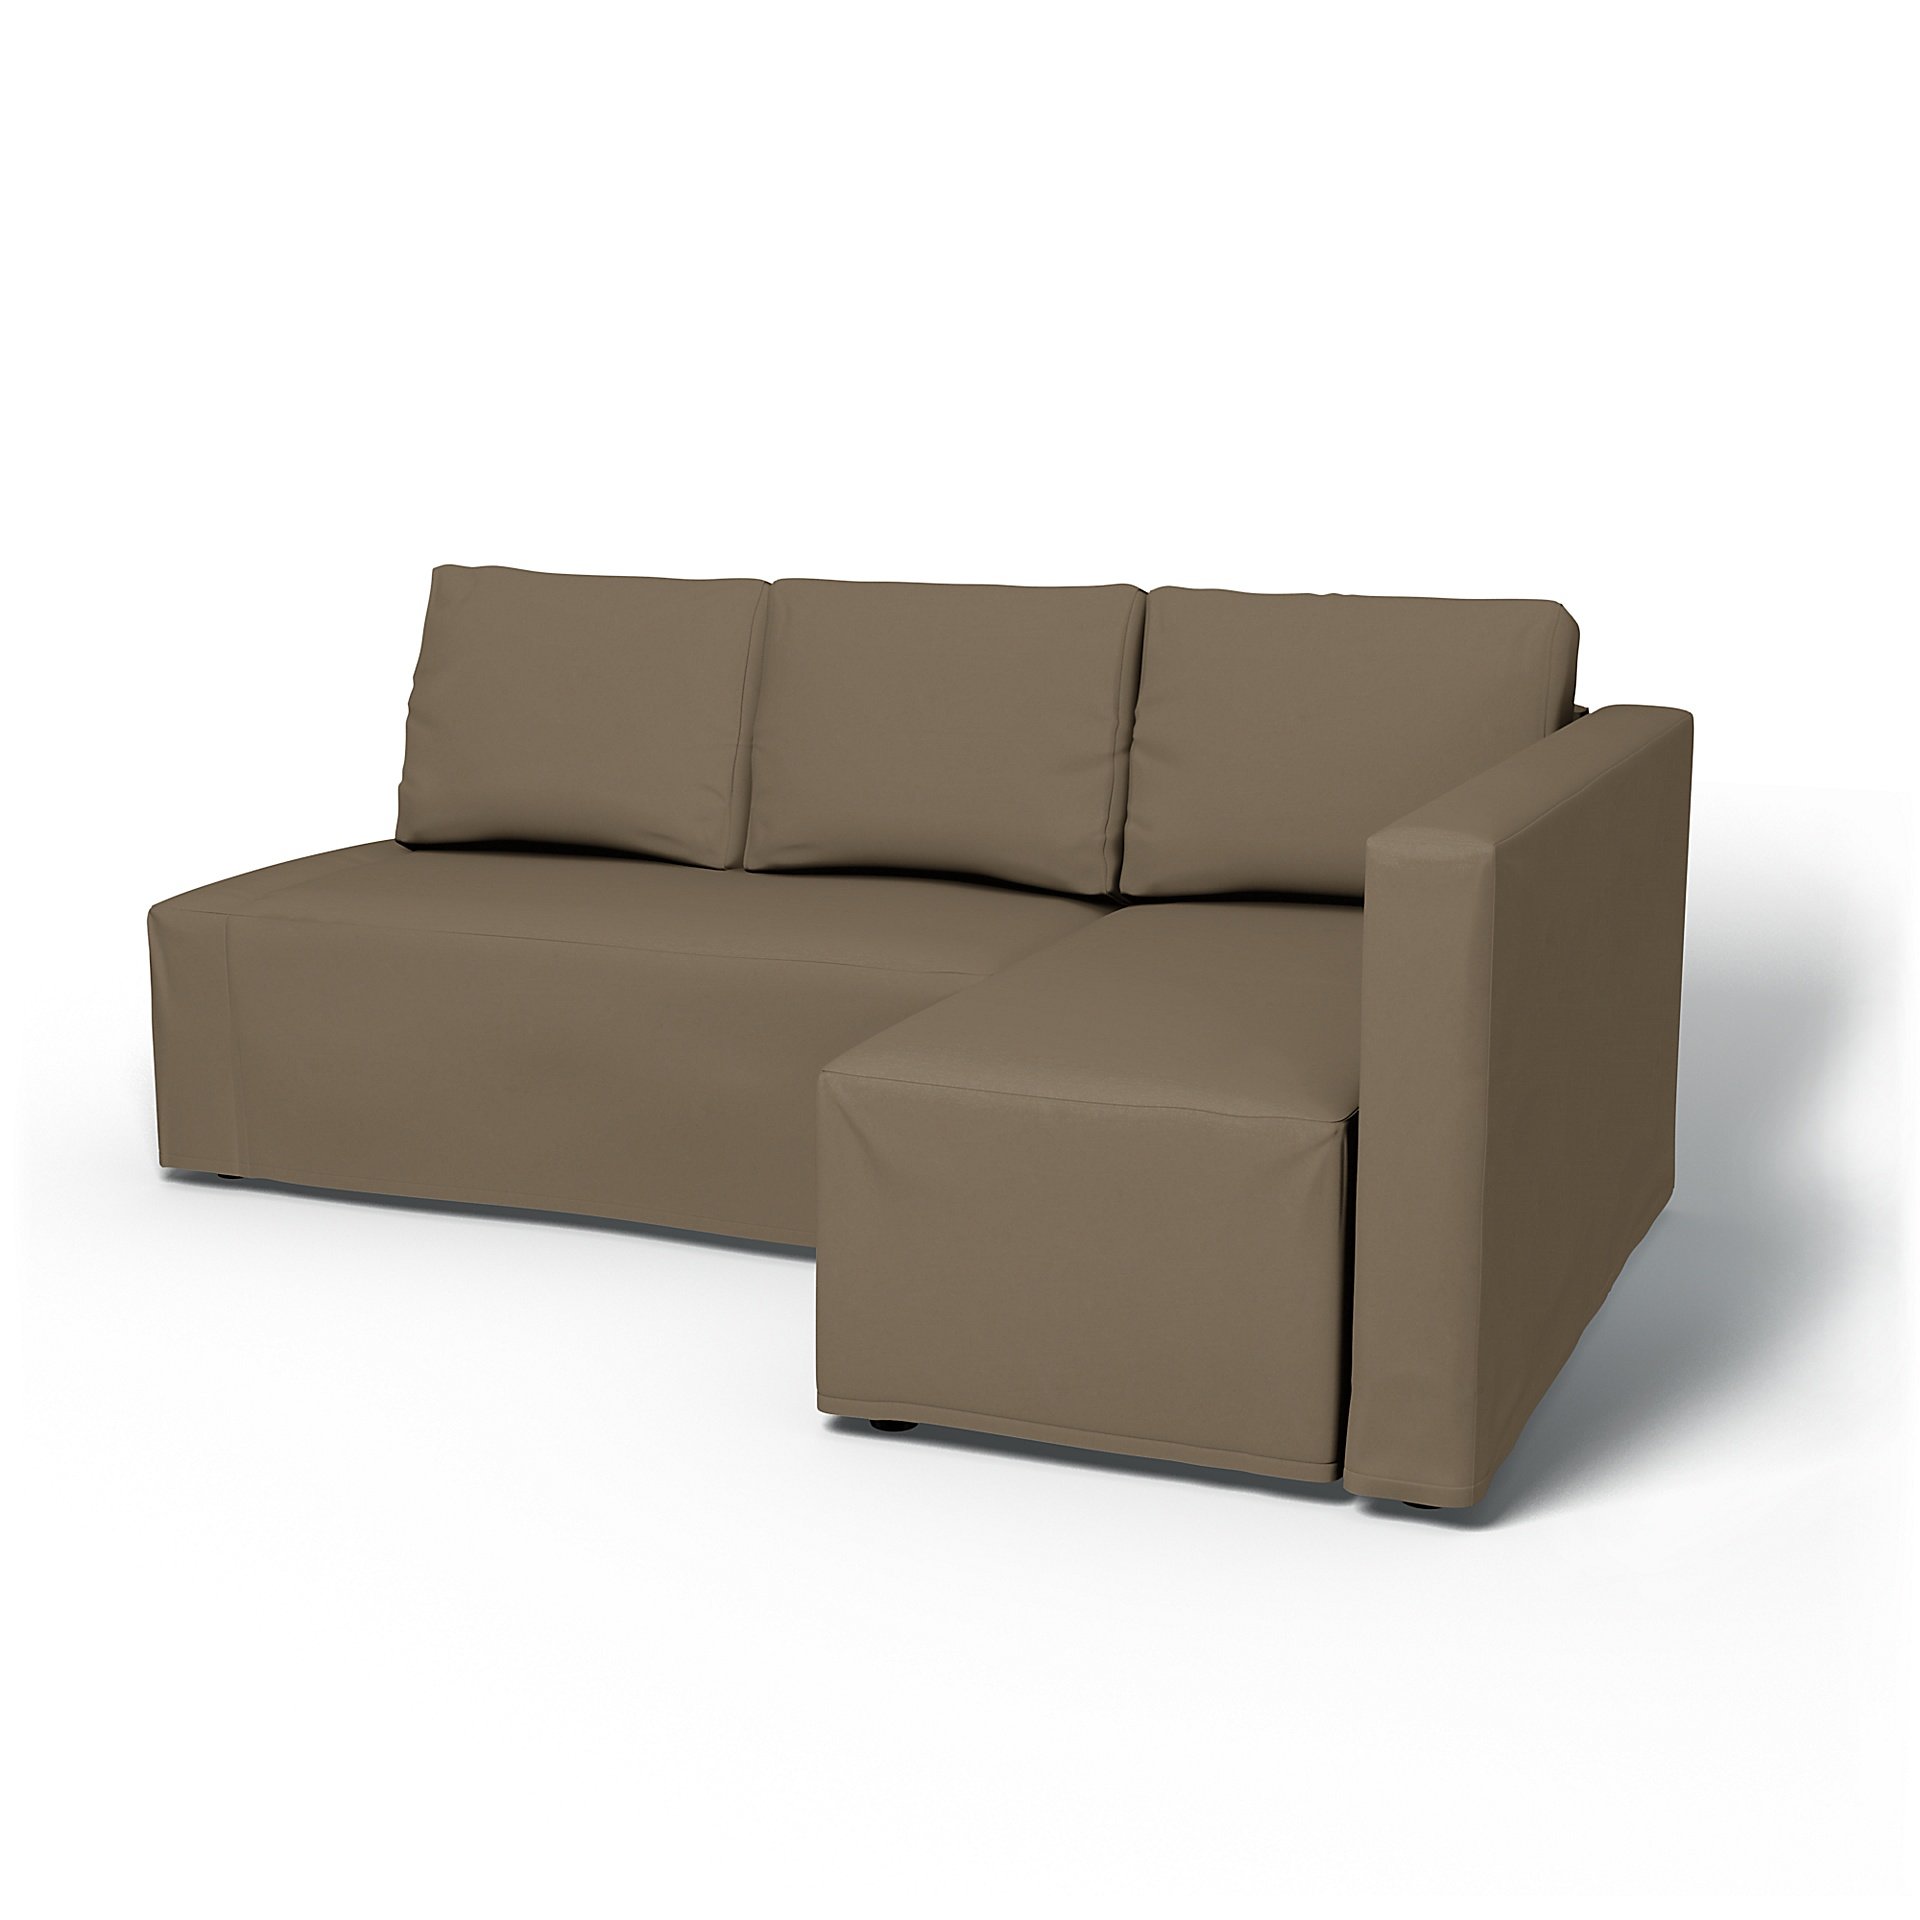 IKEA - Friheten Sofa Bed with Right Chaise Cover, Taupe, Velvet - Bemz